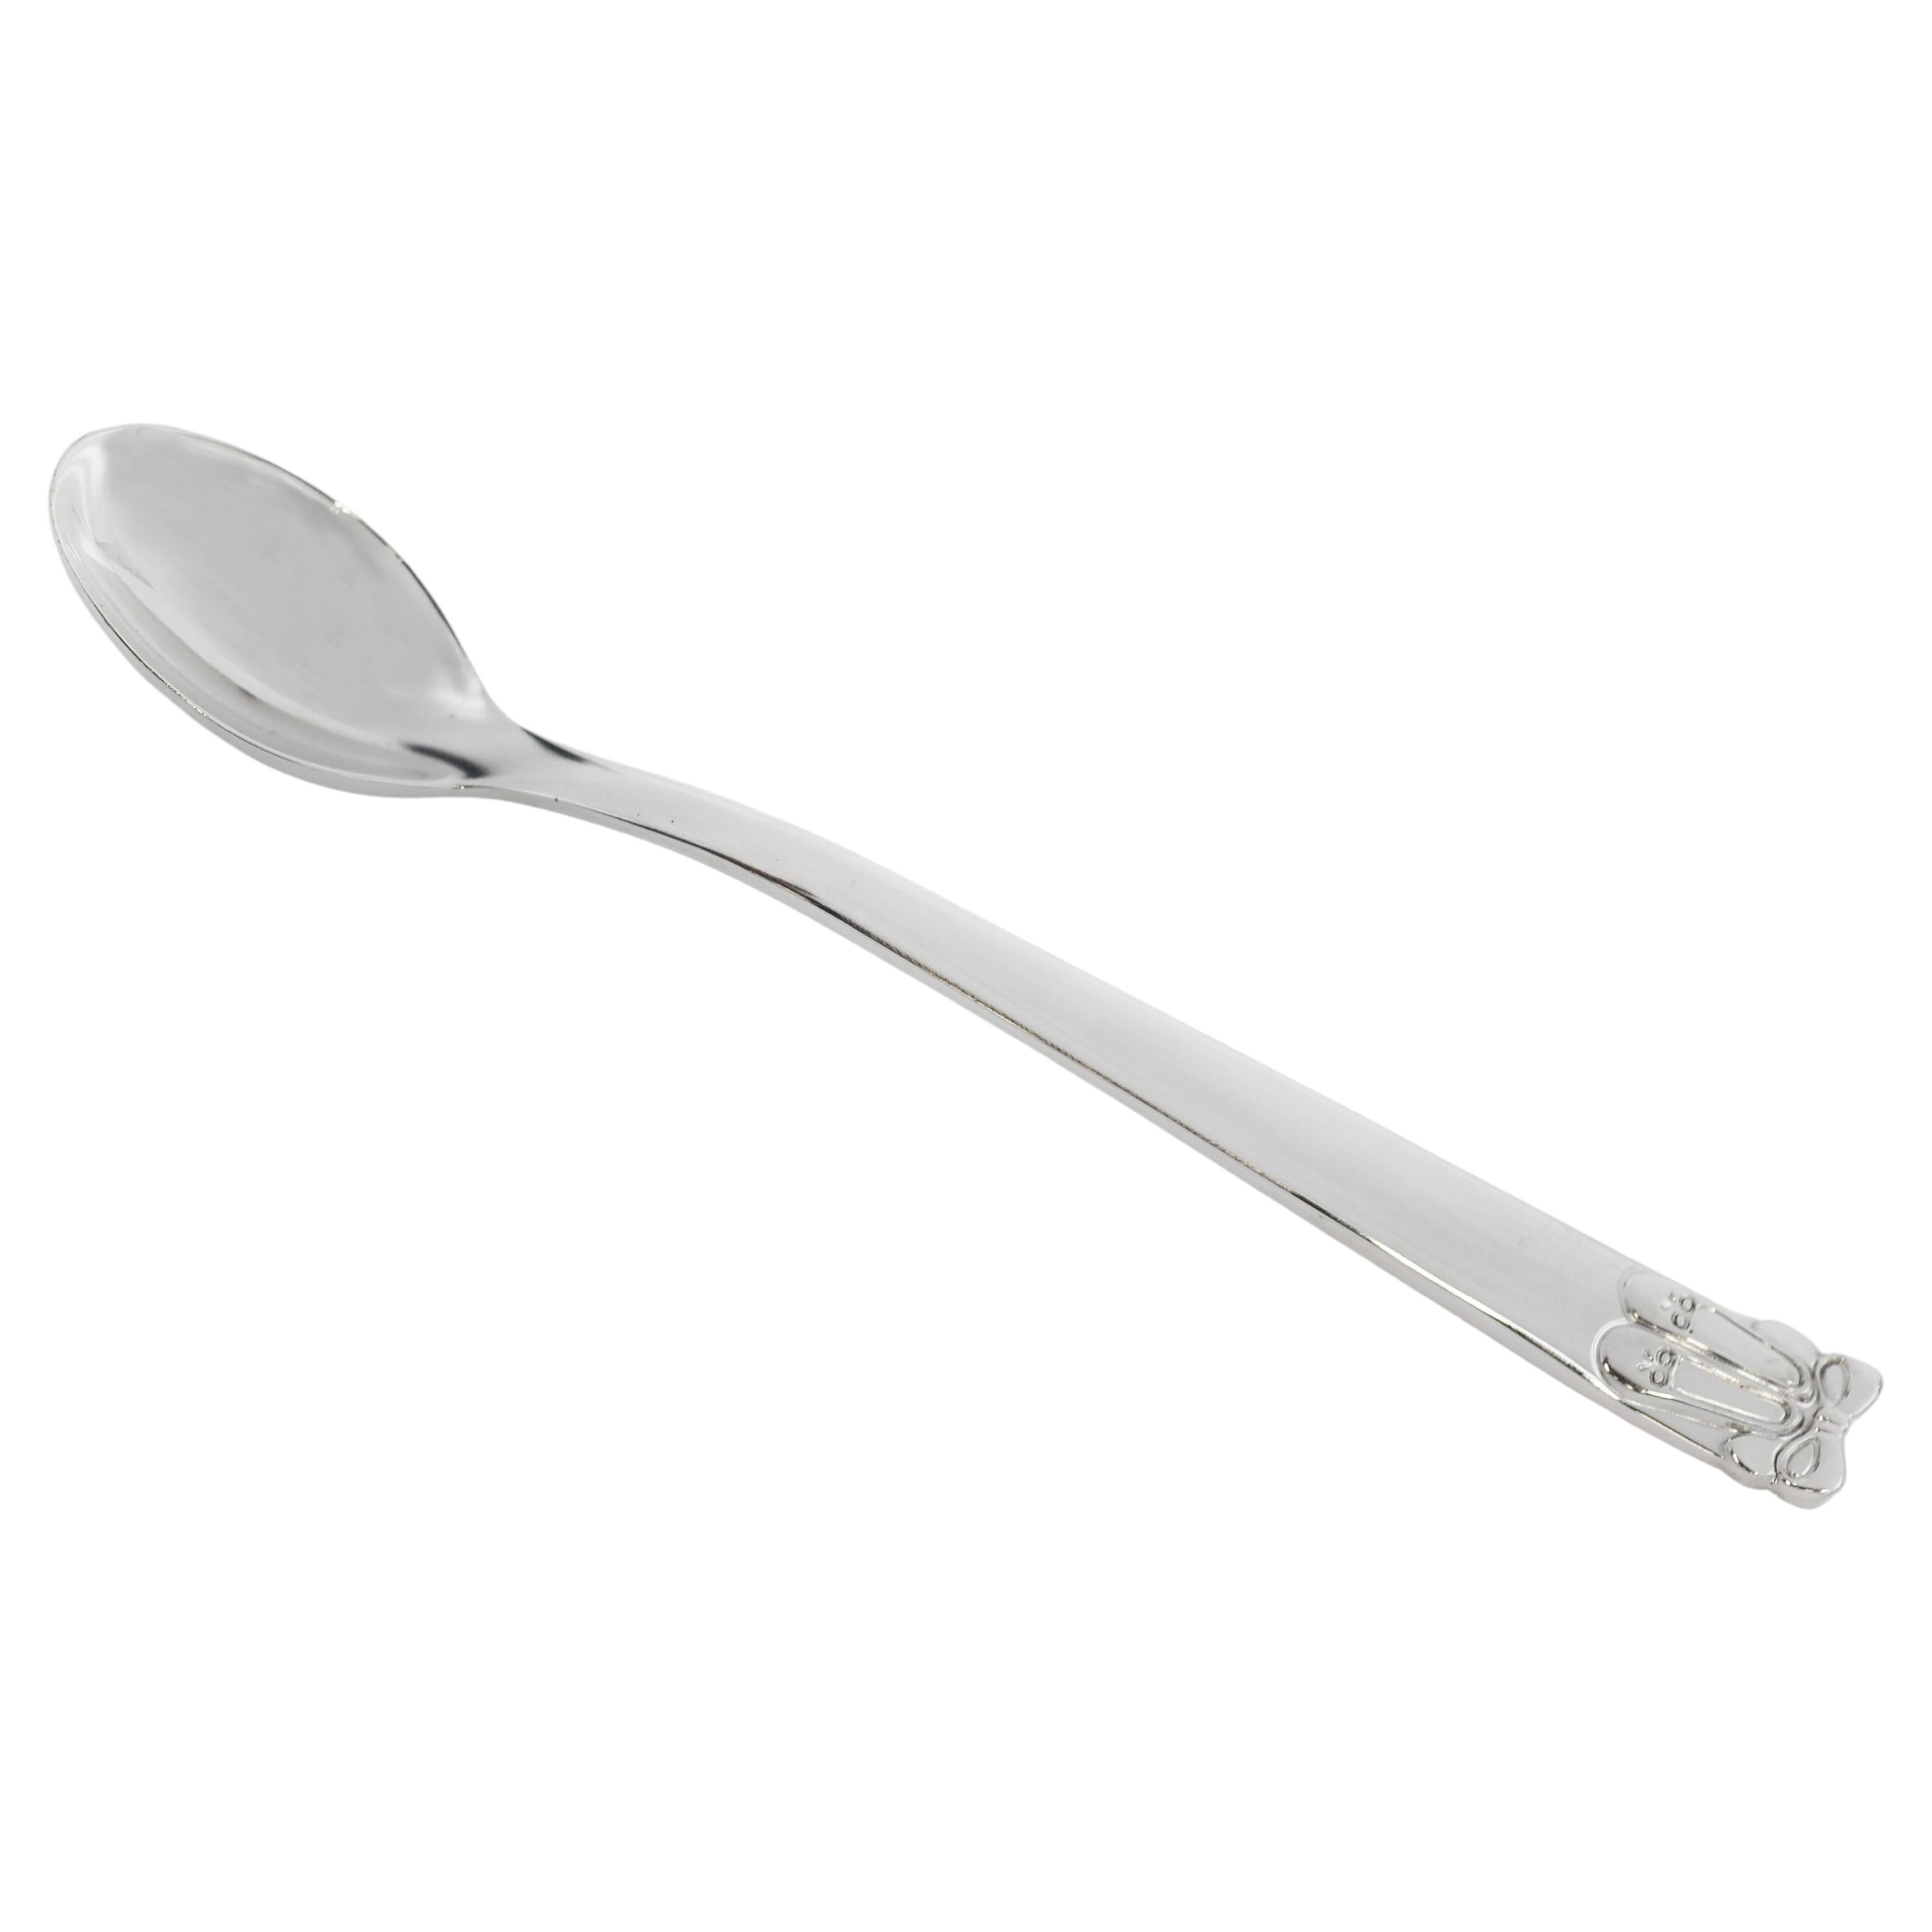  Tiffany & Co. 925 Silver Ballerina Spoon For Sale